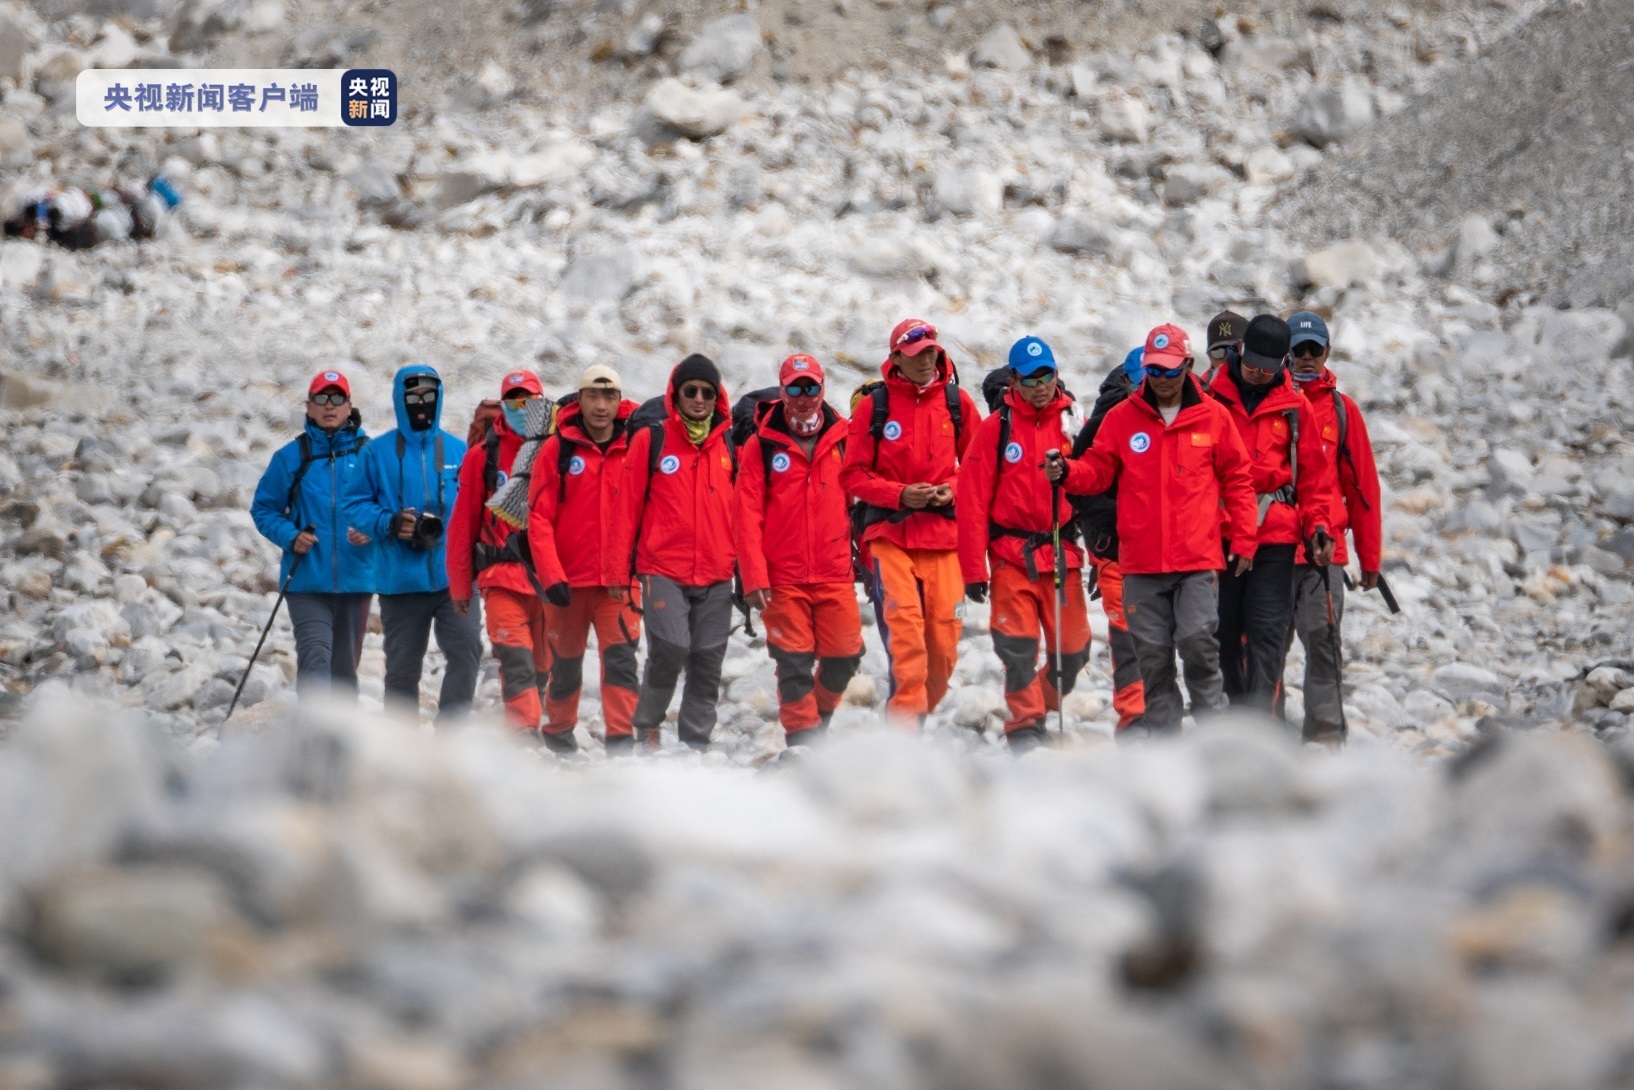 “巅峰使命”珠峰科考丨13名科考登顶队员已安全返回珠峰大本营